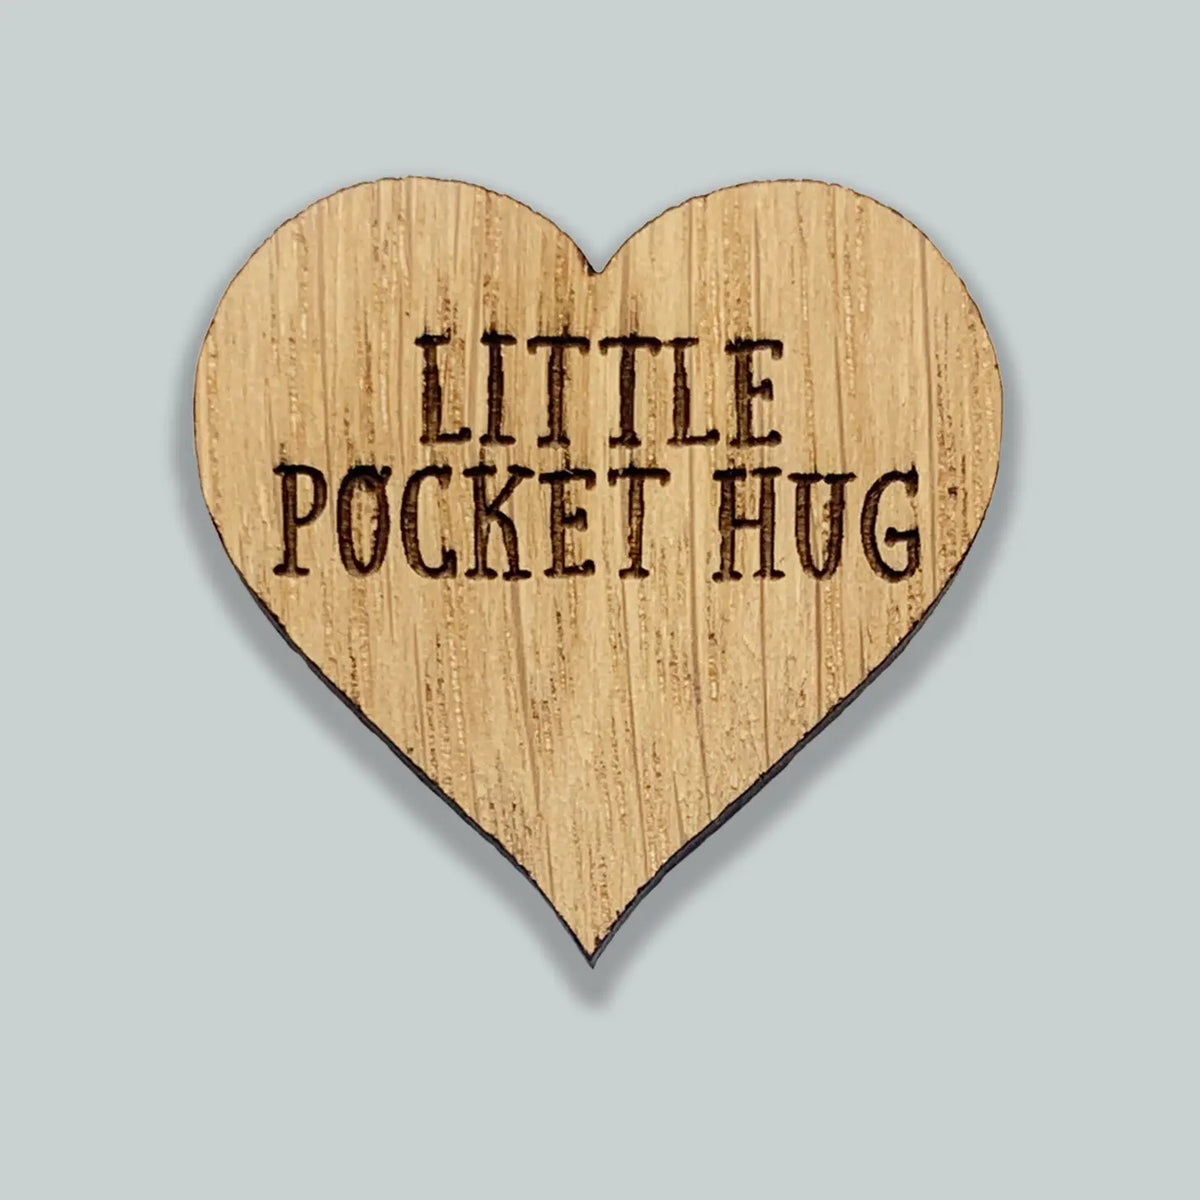 Mother &amp; Daughter Love | Little Pocket Hug